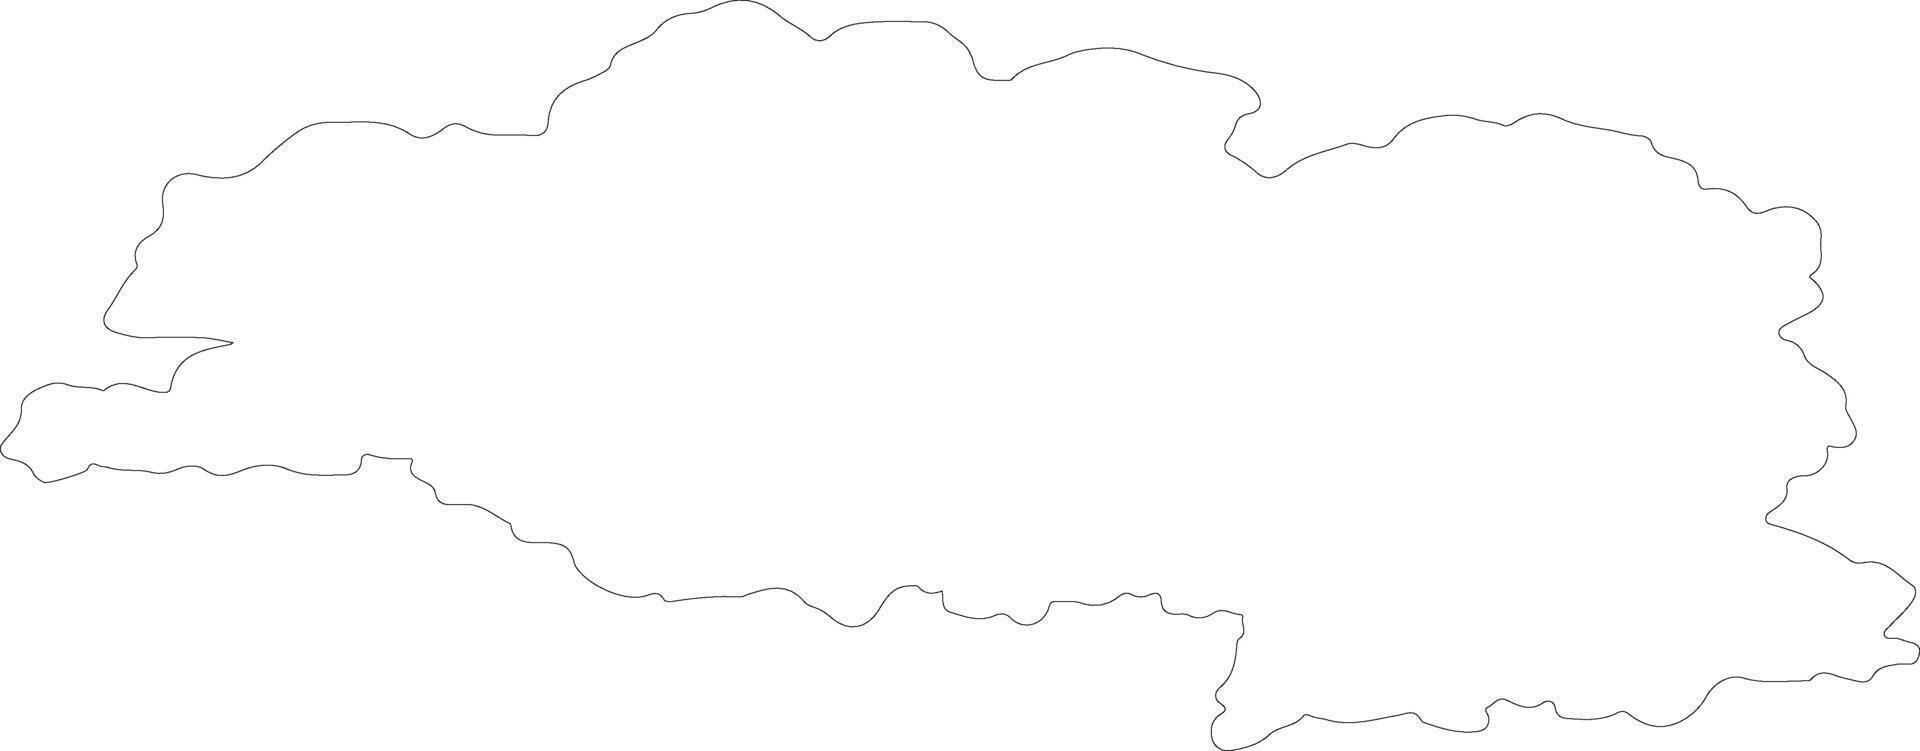 vitebsk Vitryssland översikt Karta vektor